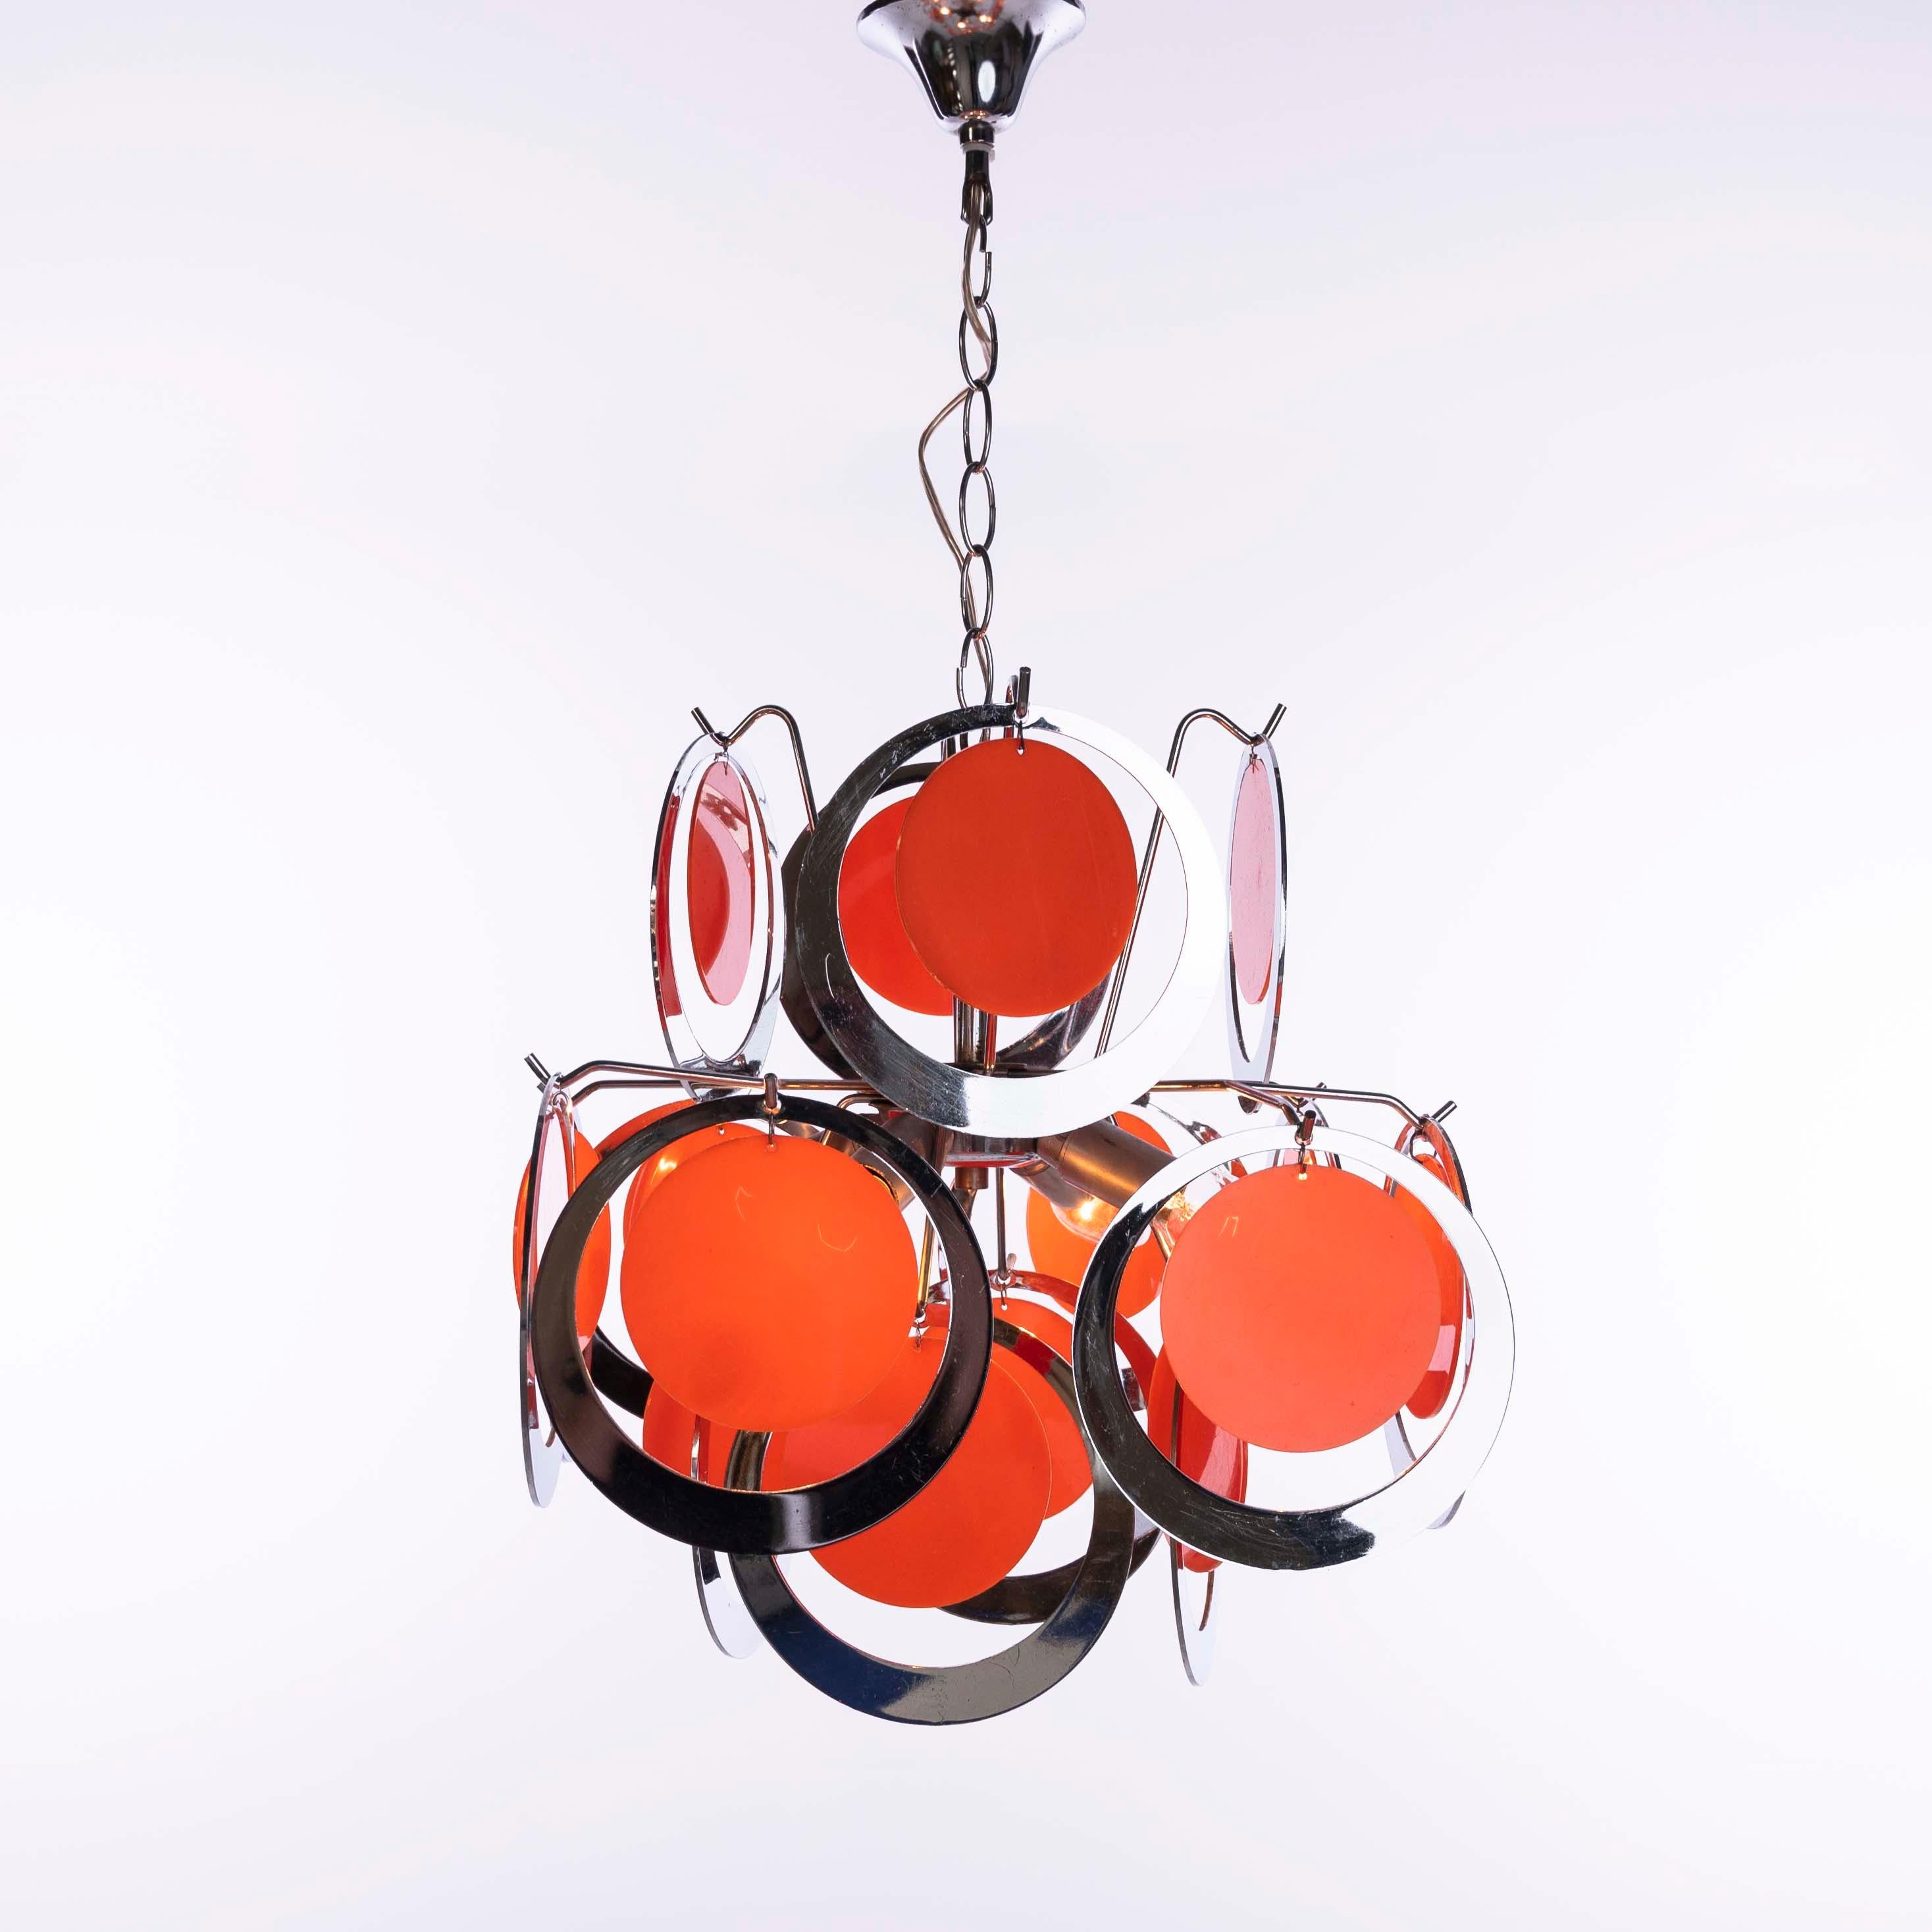 Fröhlicher Kronleuchter mit verchromten Kunststoffringen und orangefarbenen Kunststoffkreisen. Leuchte ohne Kette Höhe 46cm, 4 Glühbirnen, 16 runde Ringe plus 16 orangefarbene Kreise.